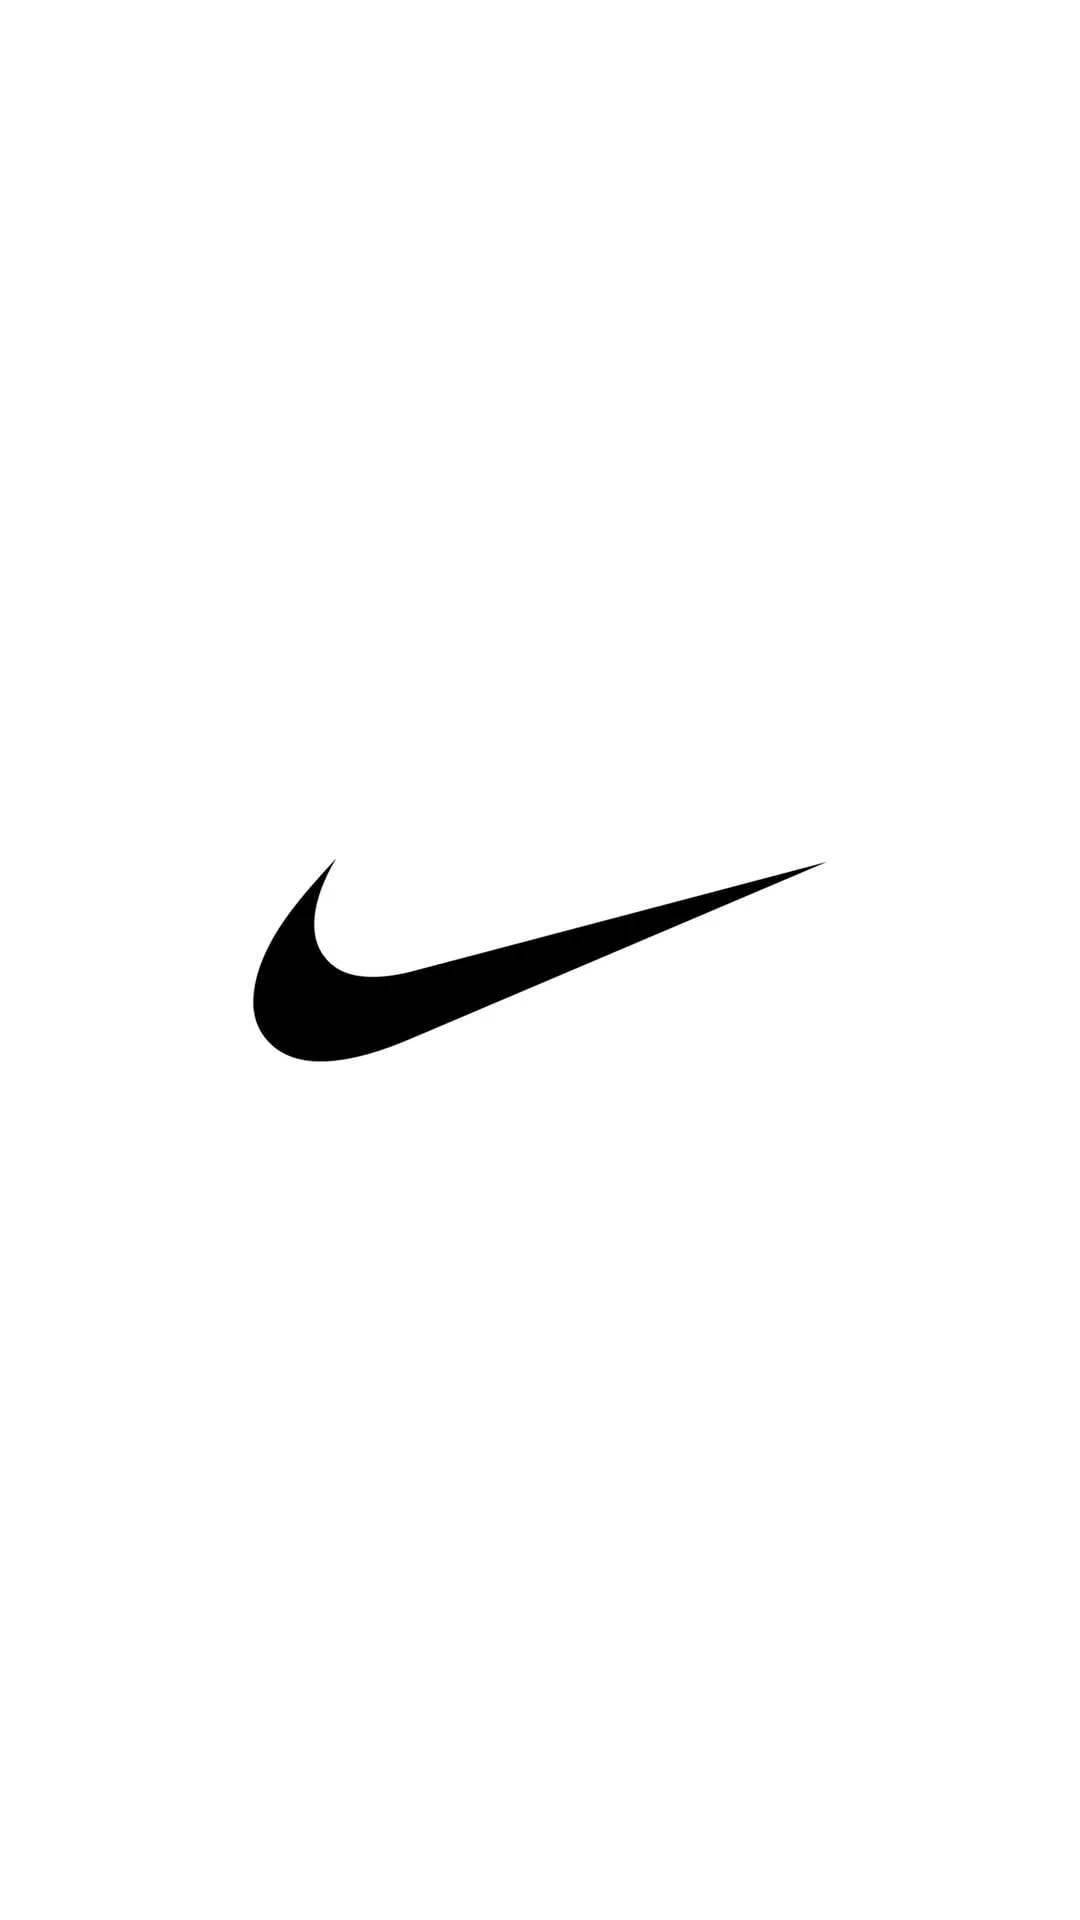 Sort Nike Iphone Logo Wallpaper